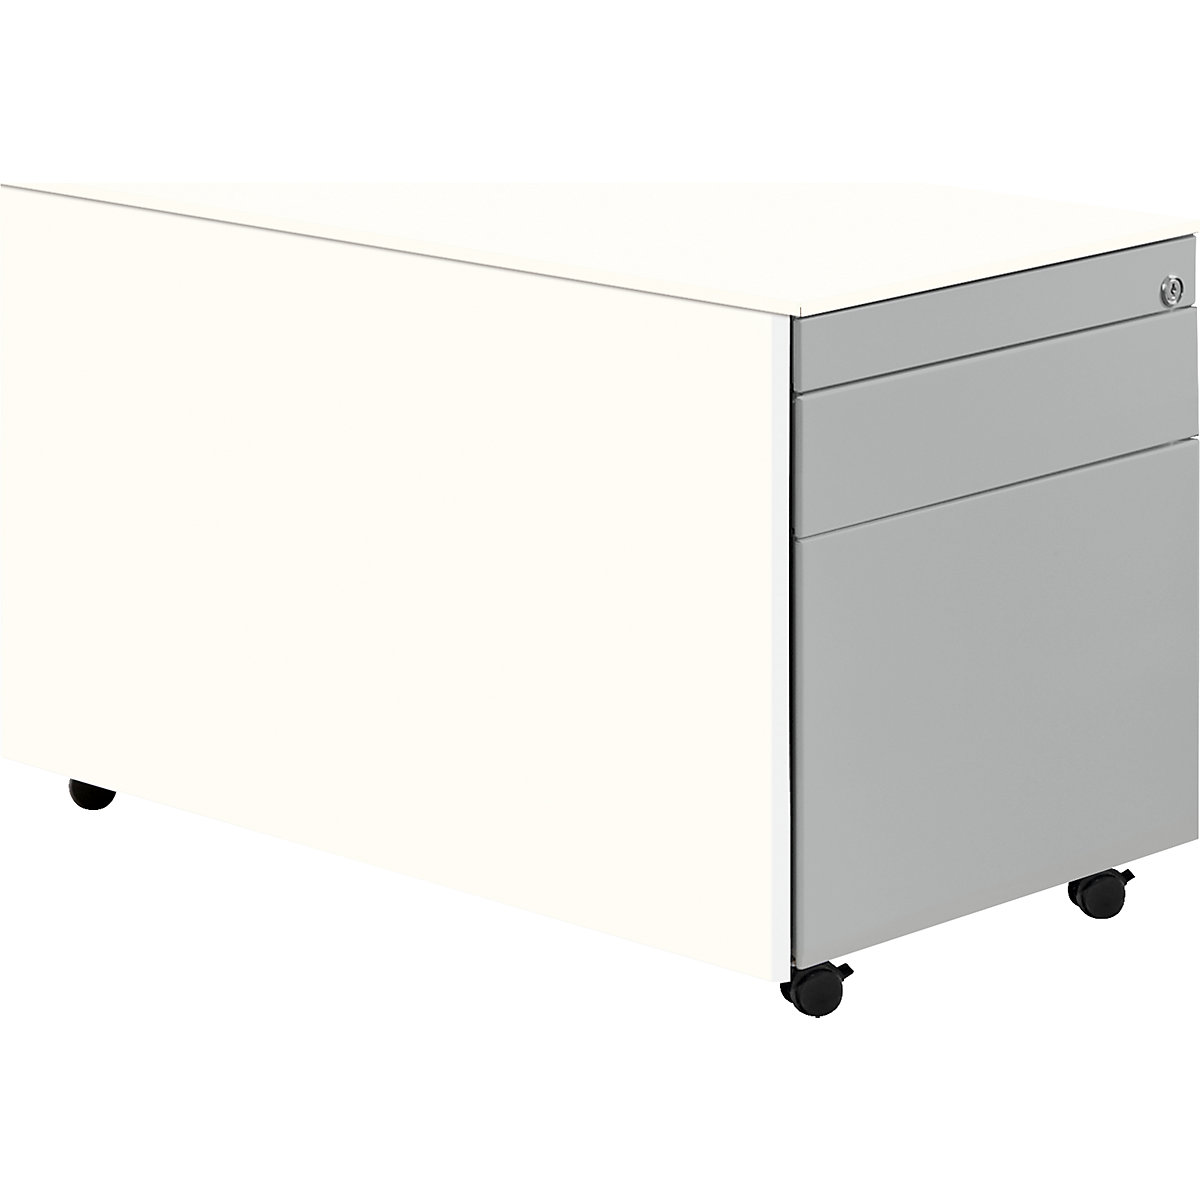 Casetieră cu sertare cu role – mauser, î. x ad. 520 x 800 mm, 1 sertar pentru materiale, 1 registratură suspendată, alb pur / alb aluminiu / alb pur